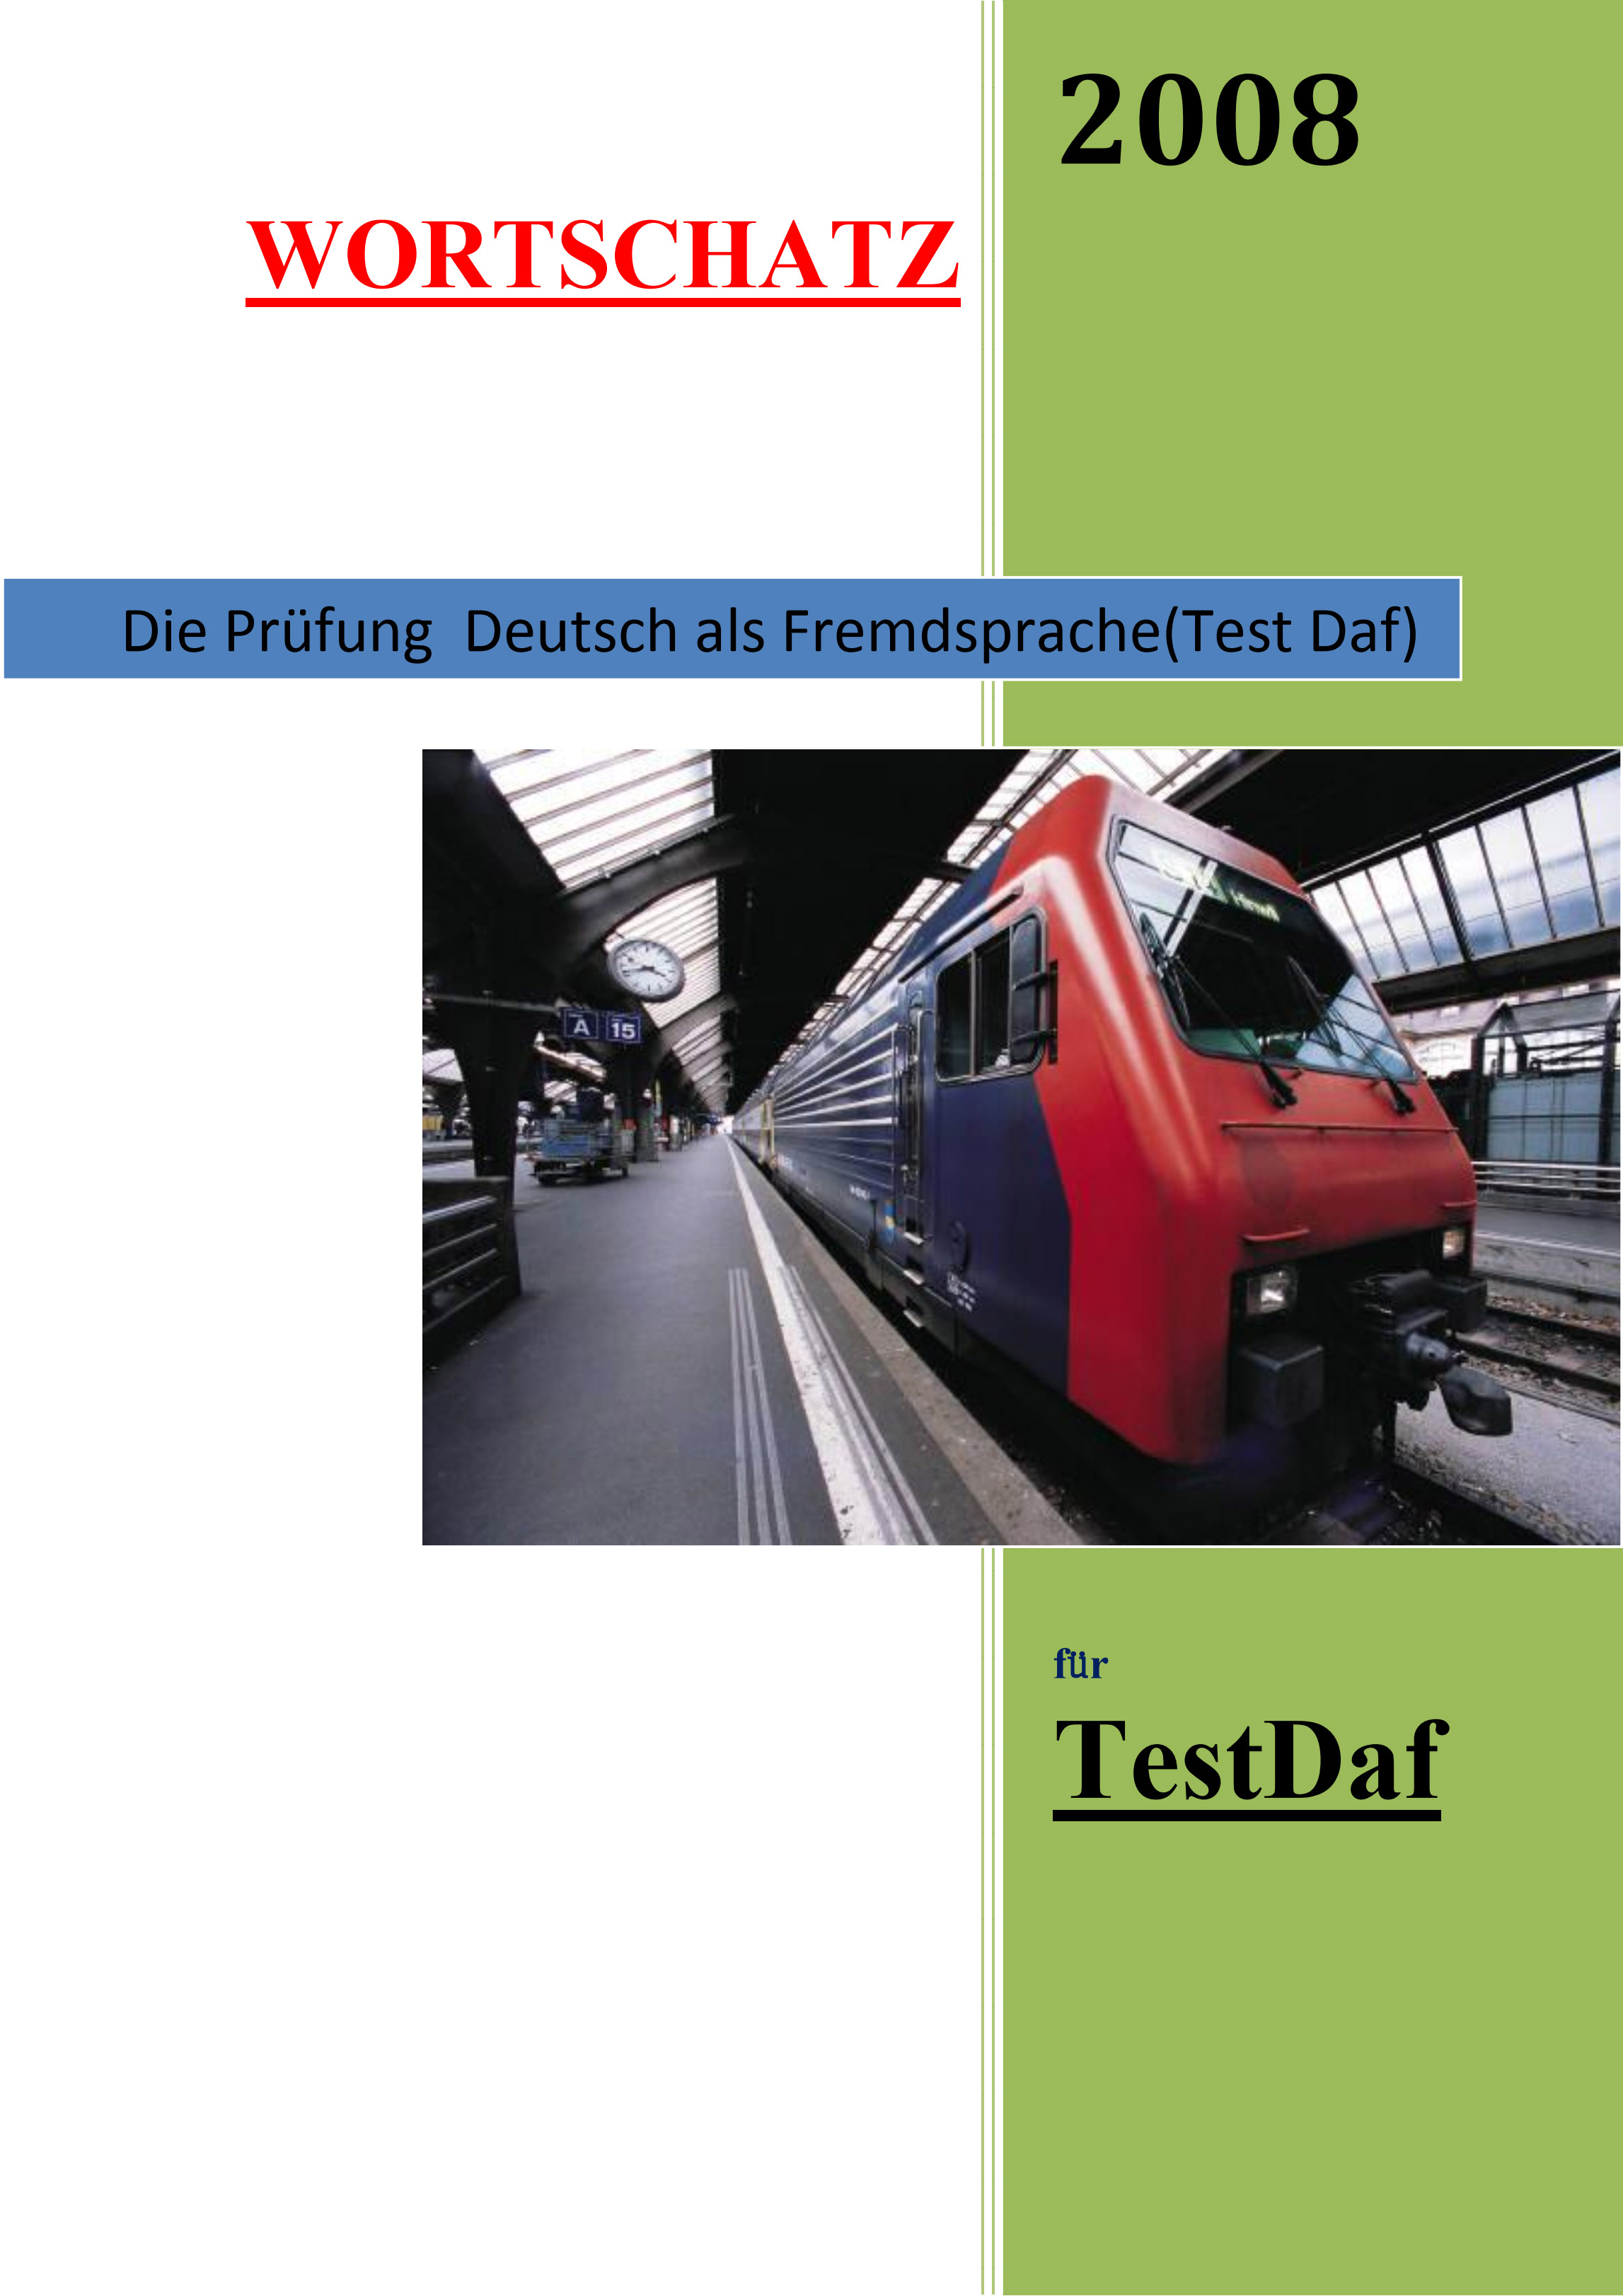 Wortschatz für TestDaF 2008